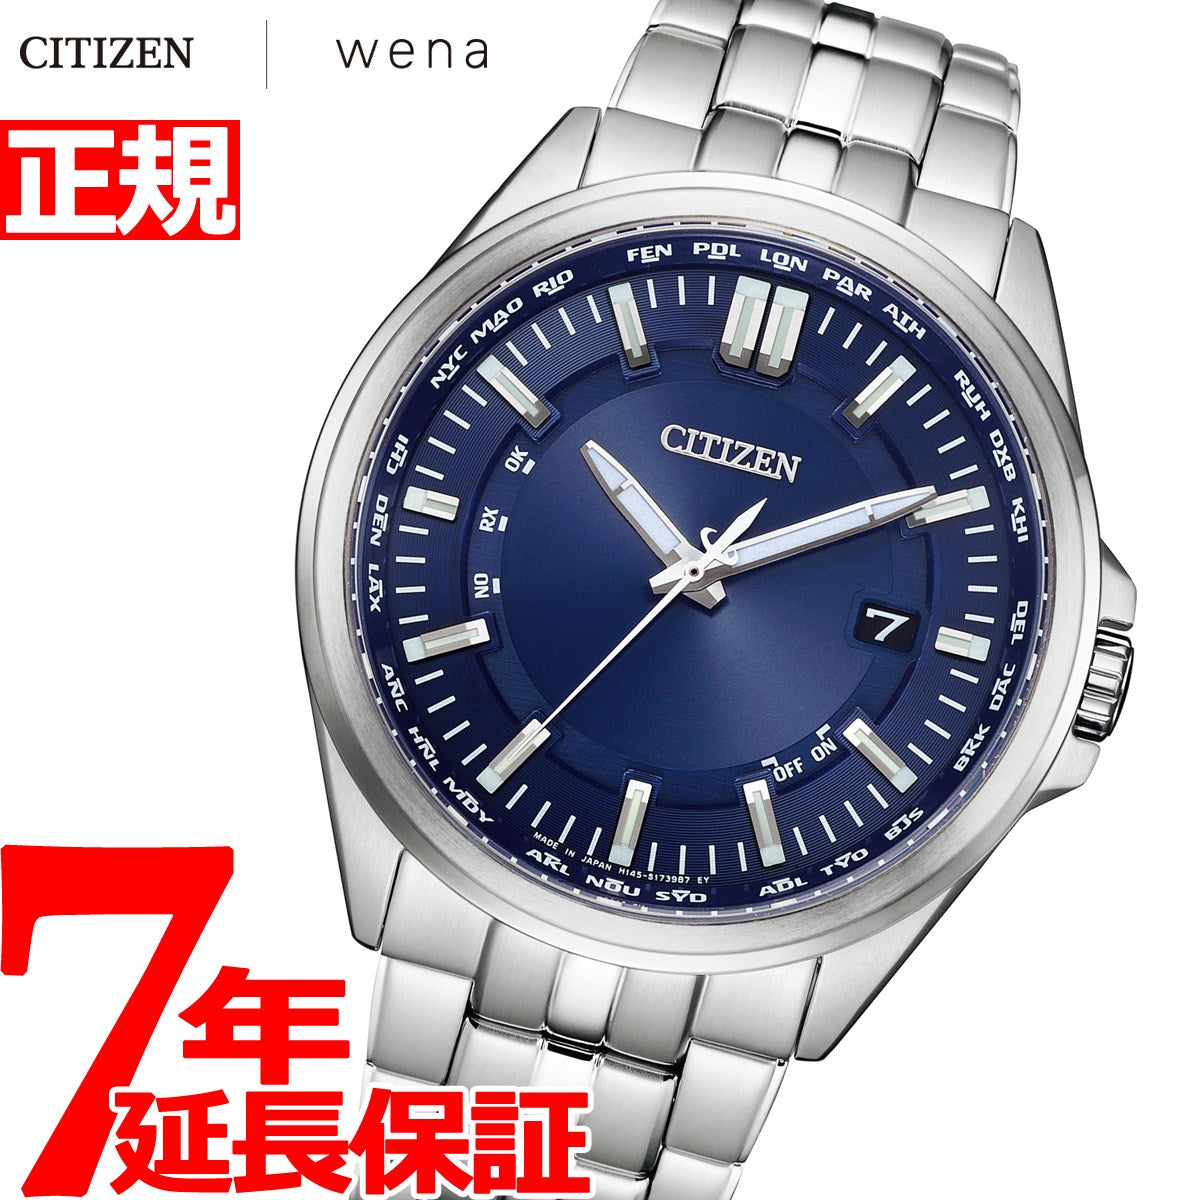 シチズンコレクション CITIZEN COLLECTION wena 3 搭載モデル スマートウオッチ エコドライブ 電波時計 腕時計 メンズ ダイレクトフライト CB0017-71L